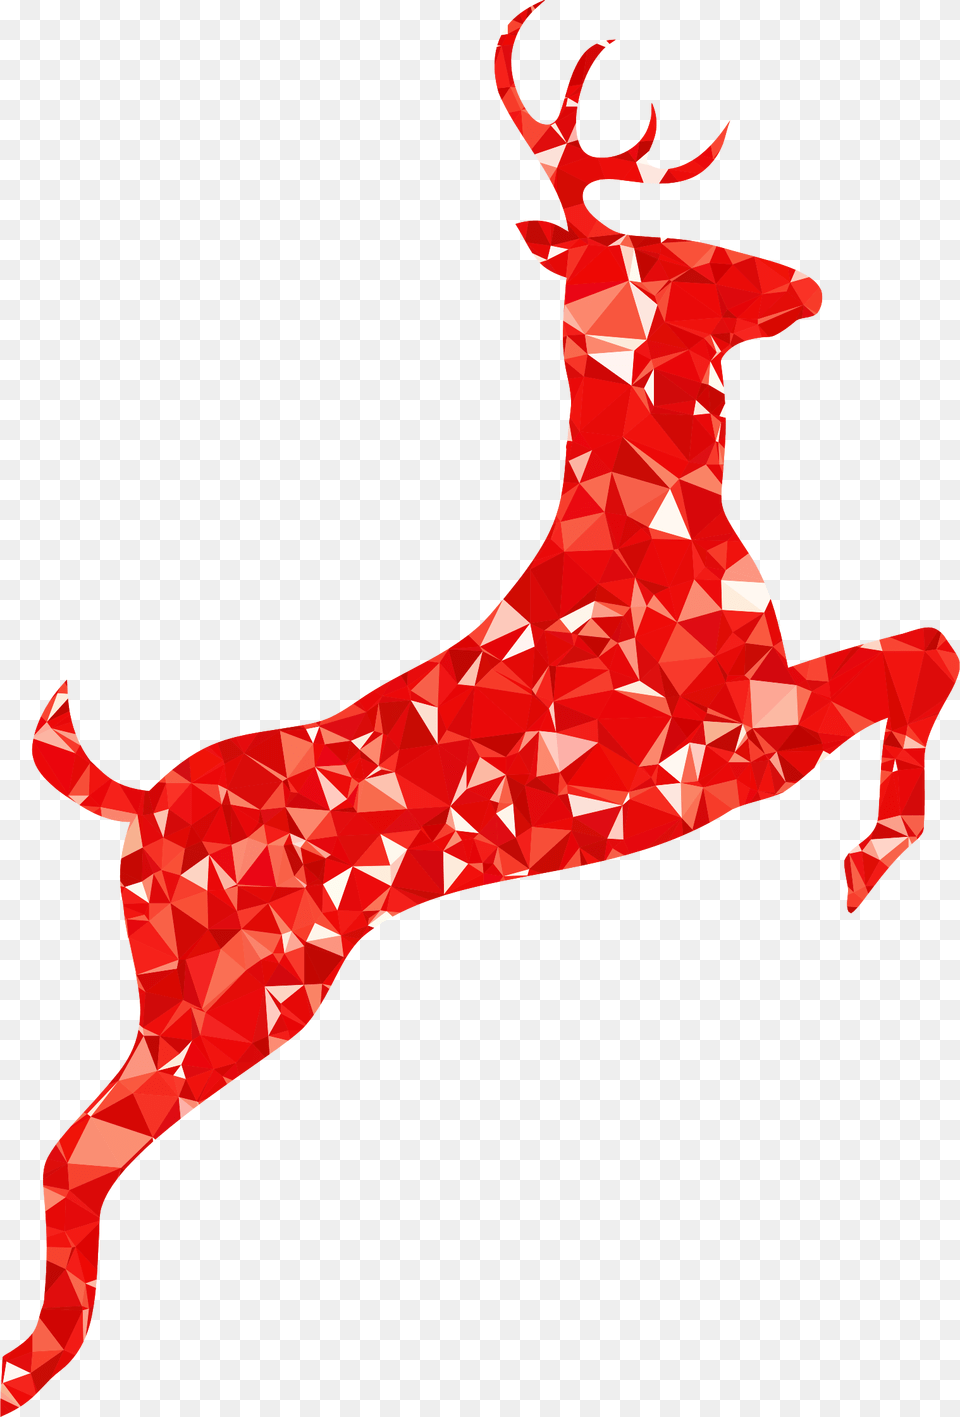 Holiday Ornamentreindeerdeer Red Deer Clip Art, Paper, Animal, Mammal, Wildlife Png Image